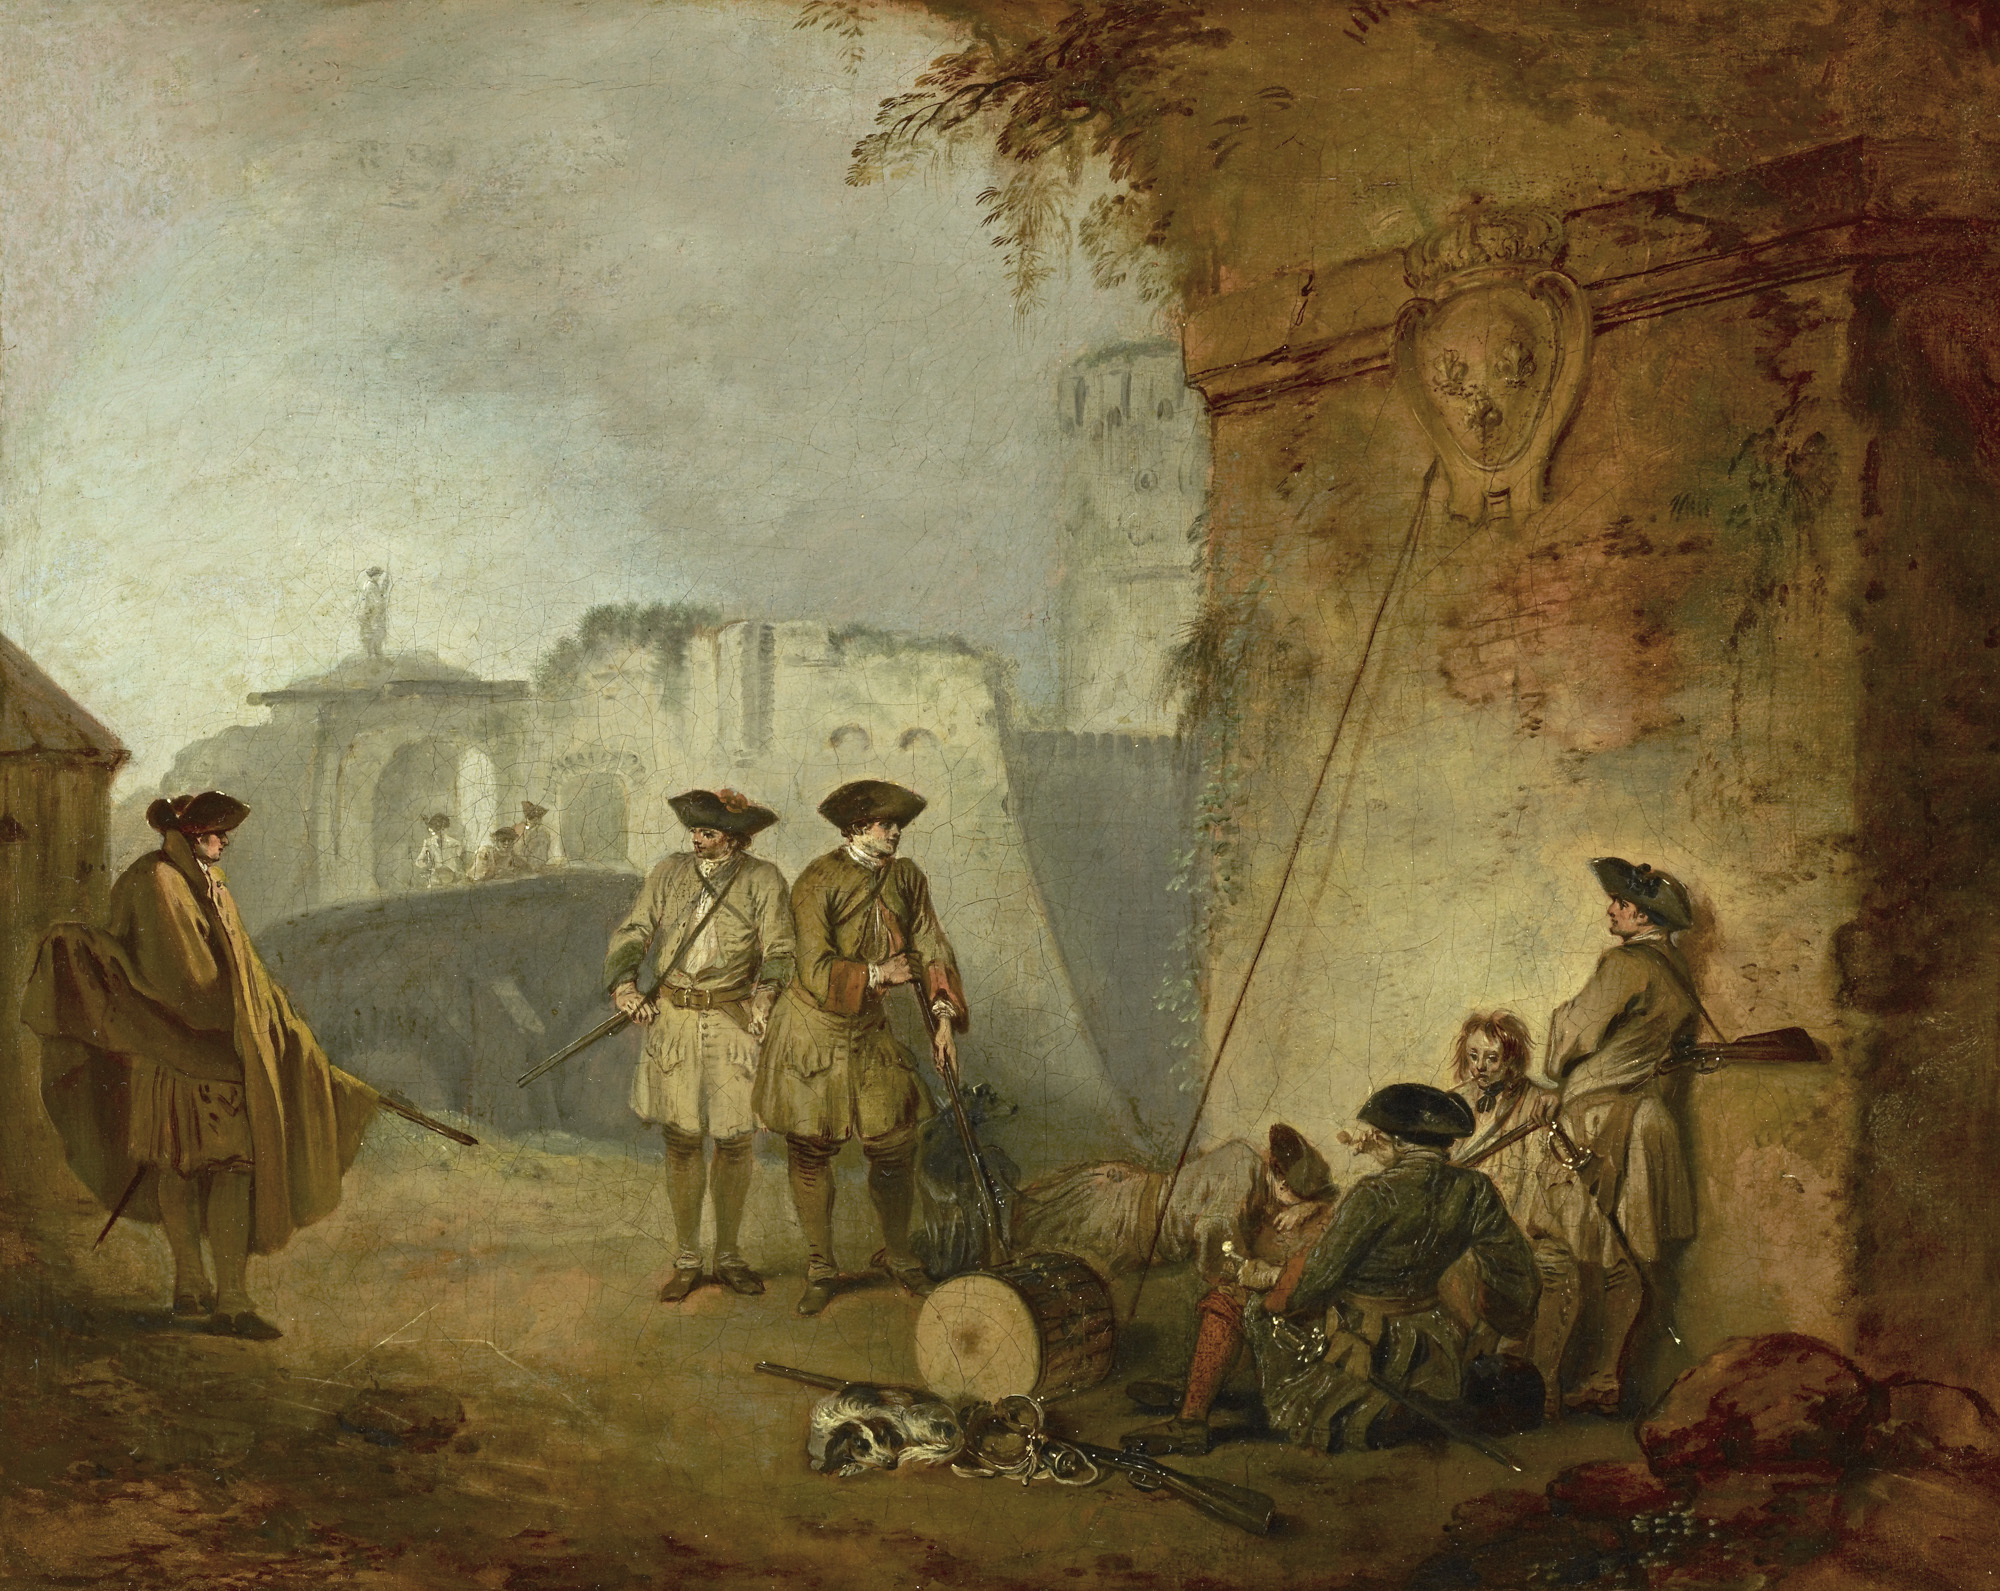 "The Portal of Valenciennes" by Jean-Antoine Watteau